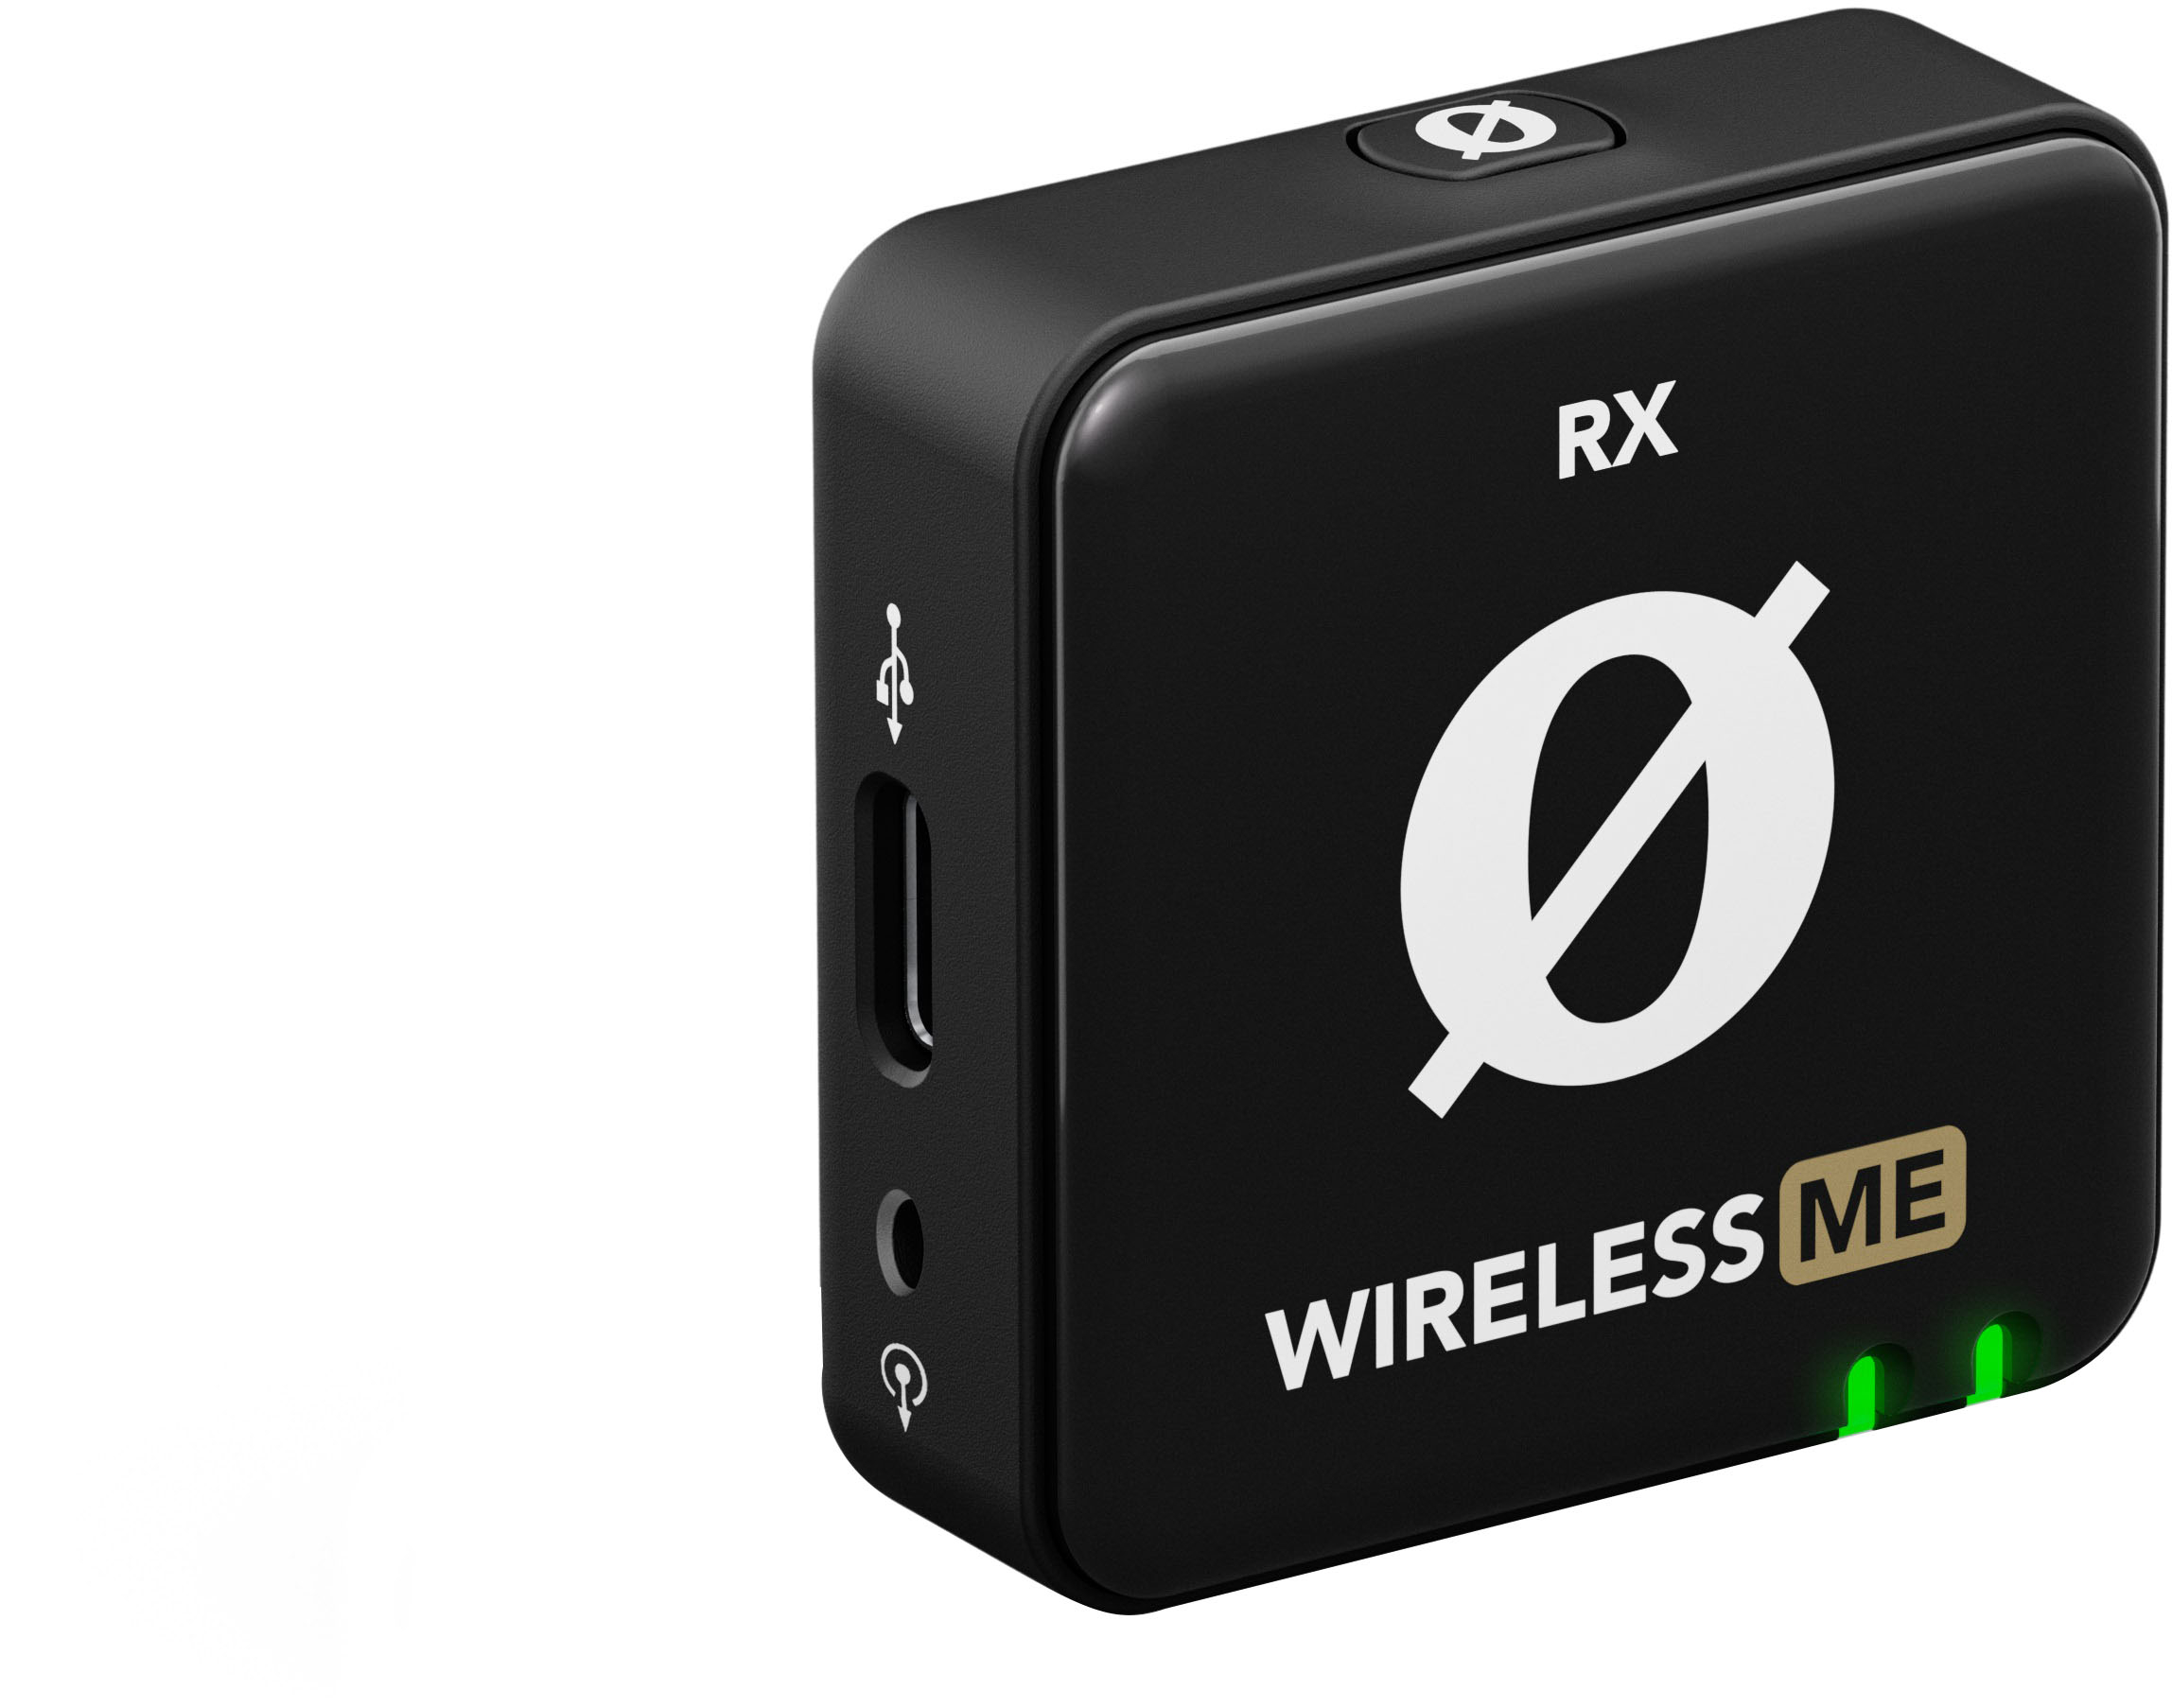 Rode Debuts Dual Transmitter Version of Popular Wireless ME Mic